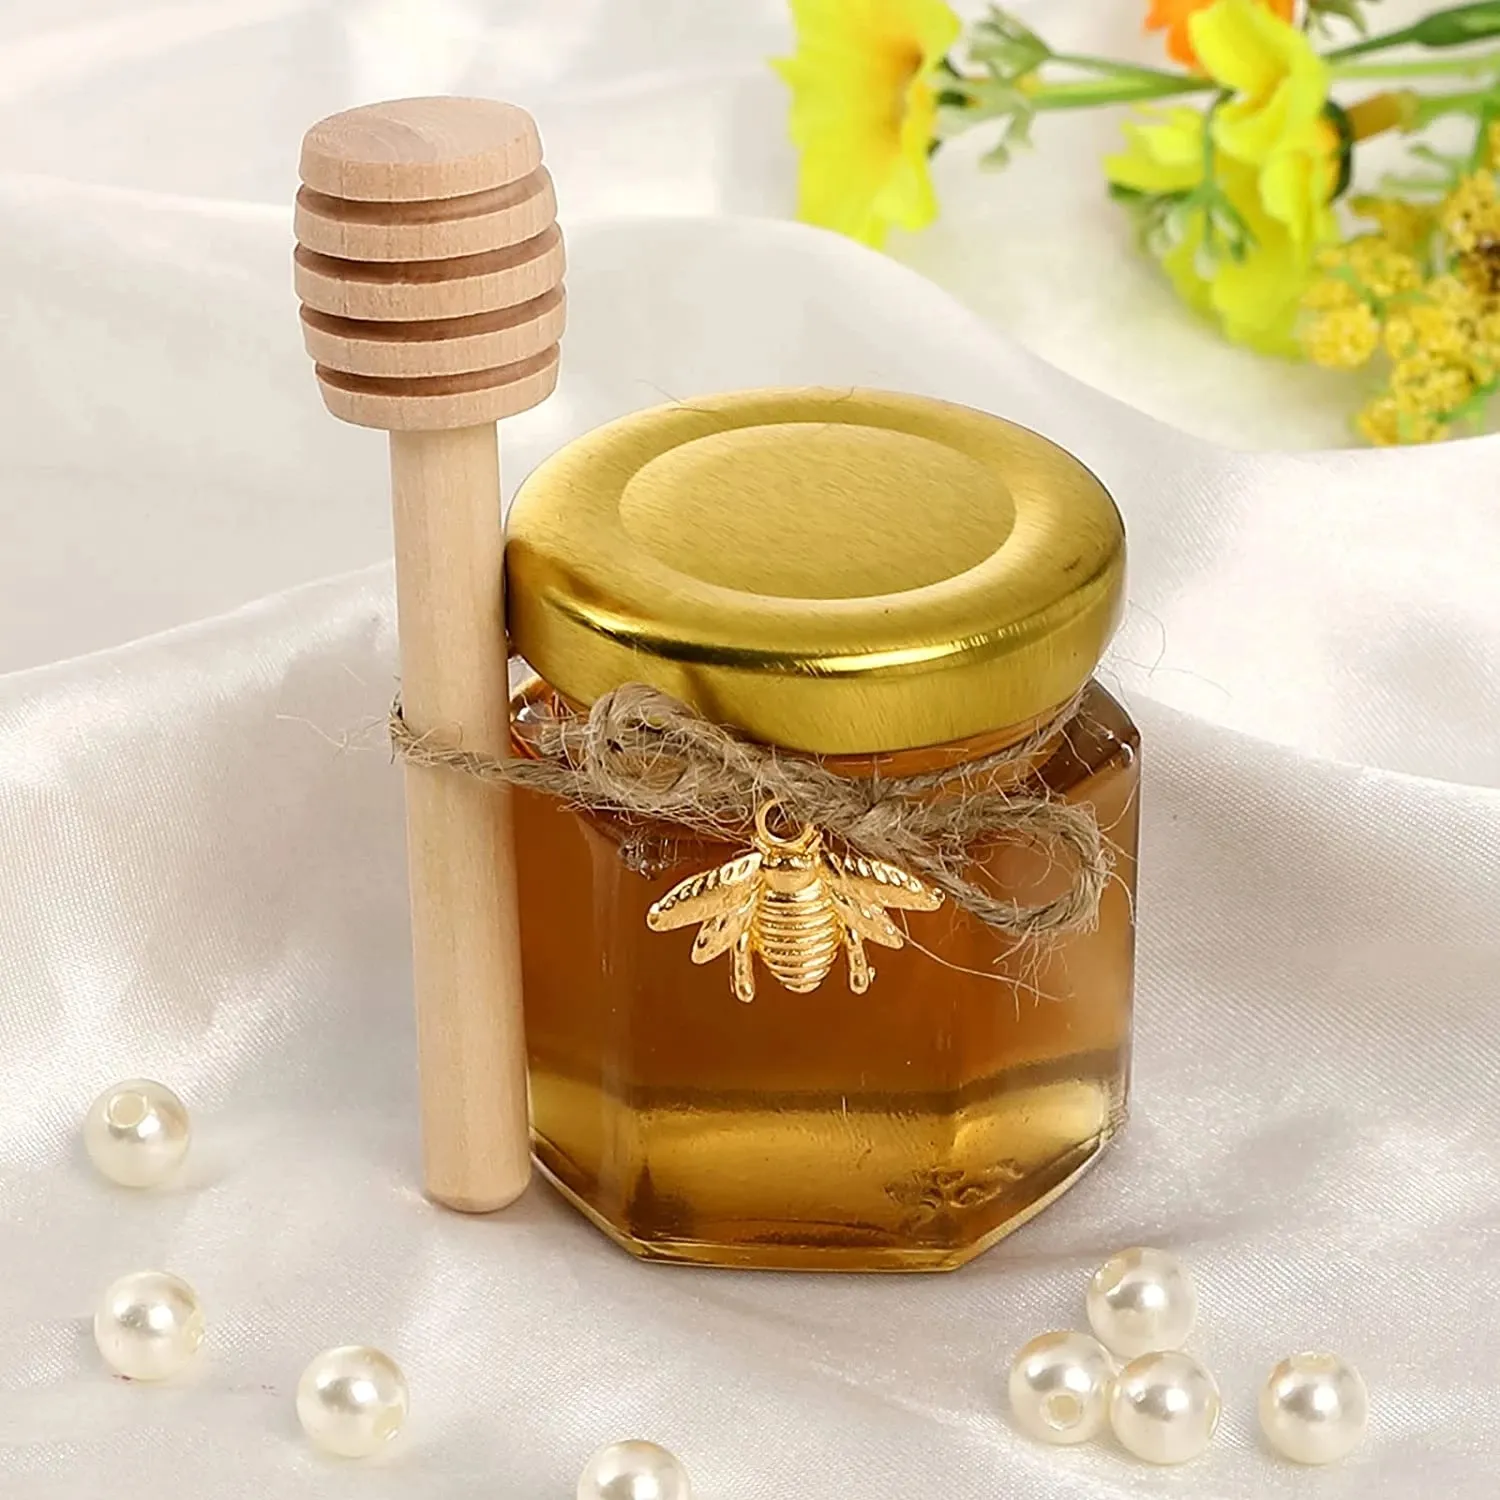 Mini tarro de miel hexagonal de 45ml de alta calidad con tapa dorada para regalos Favores DE BODA Mermeladas de miel Jelly Candy